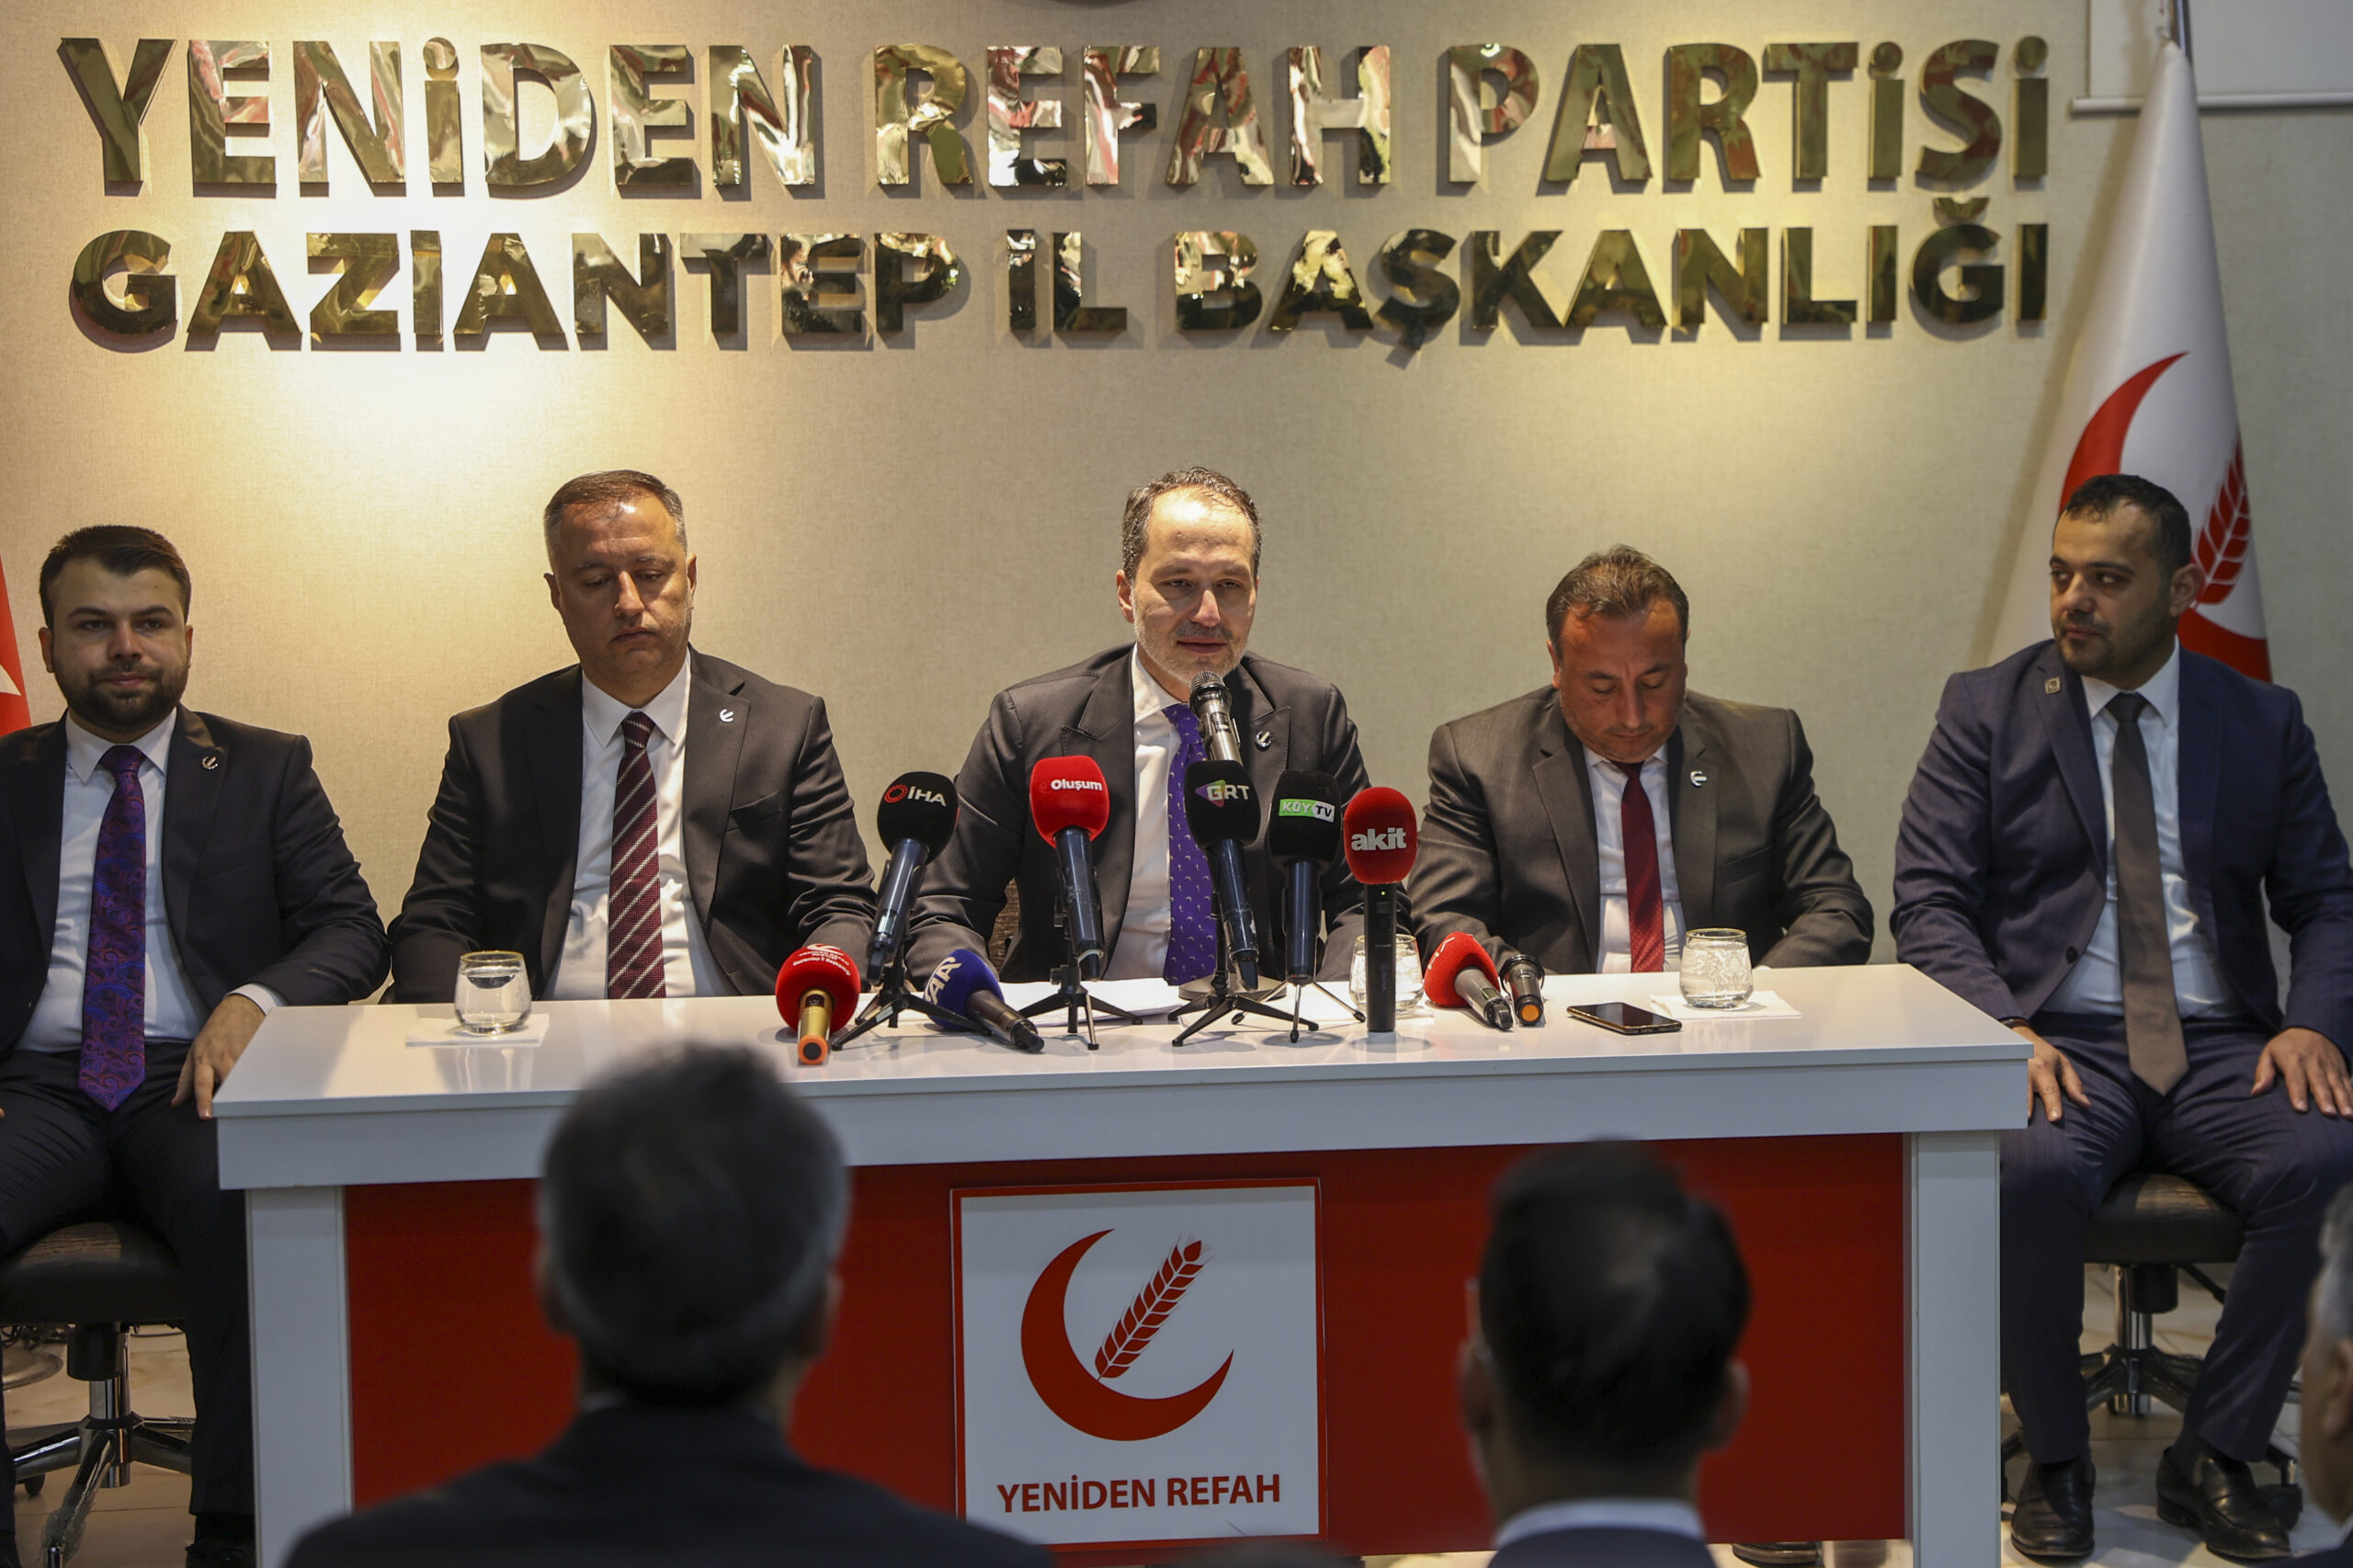 Yeniden Refah Partisi Genel Başkanı Erbakan’dan partisinin Gaziantep il başkanlığına ziyaret